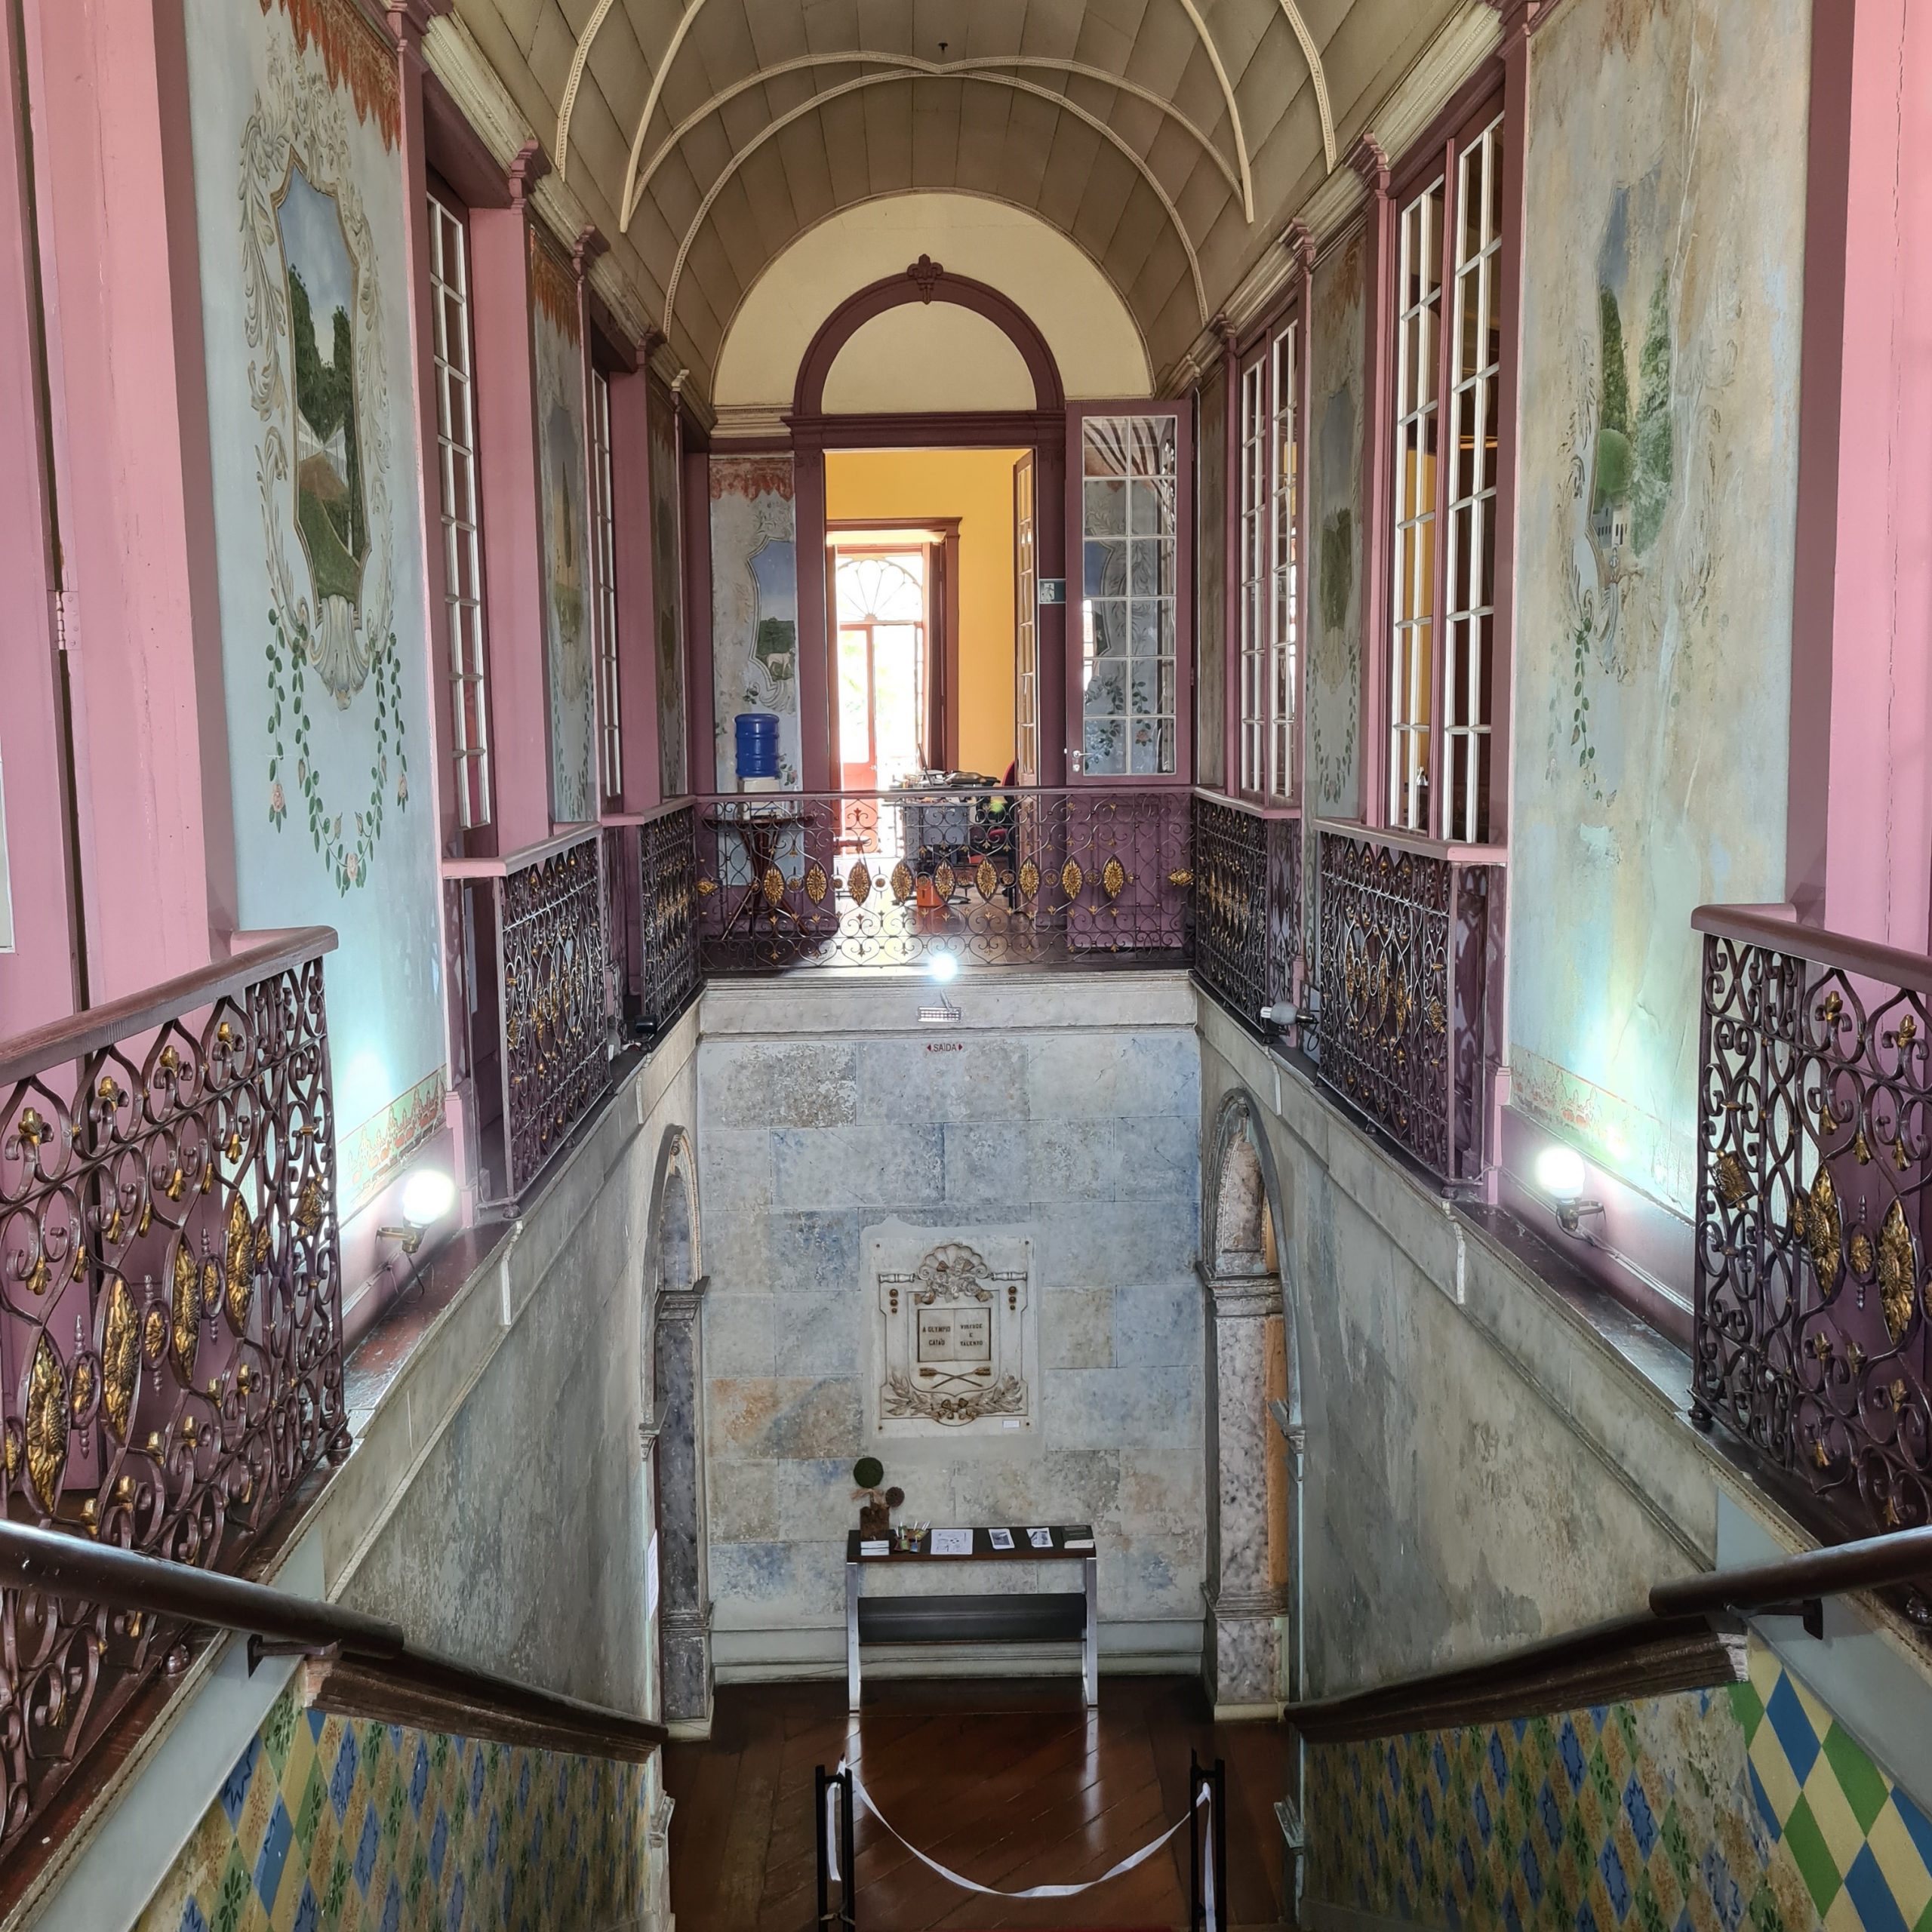 Imagem representa o acesso a uma escadaria com paredes ornamentadas, com sacadas de metal ornamentado dando acesso pelo piso superior.